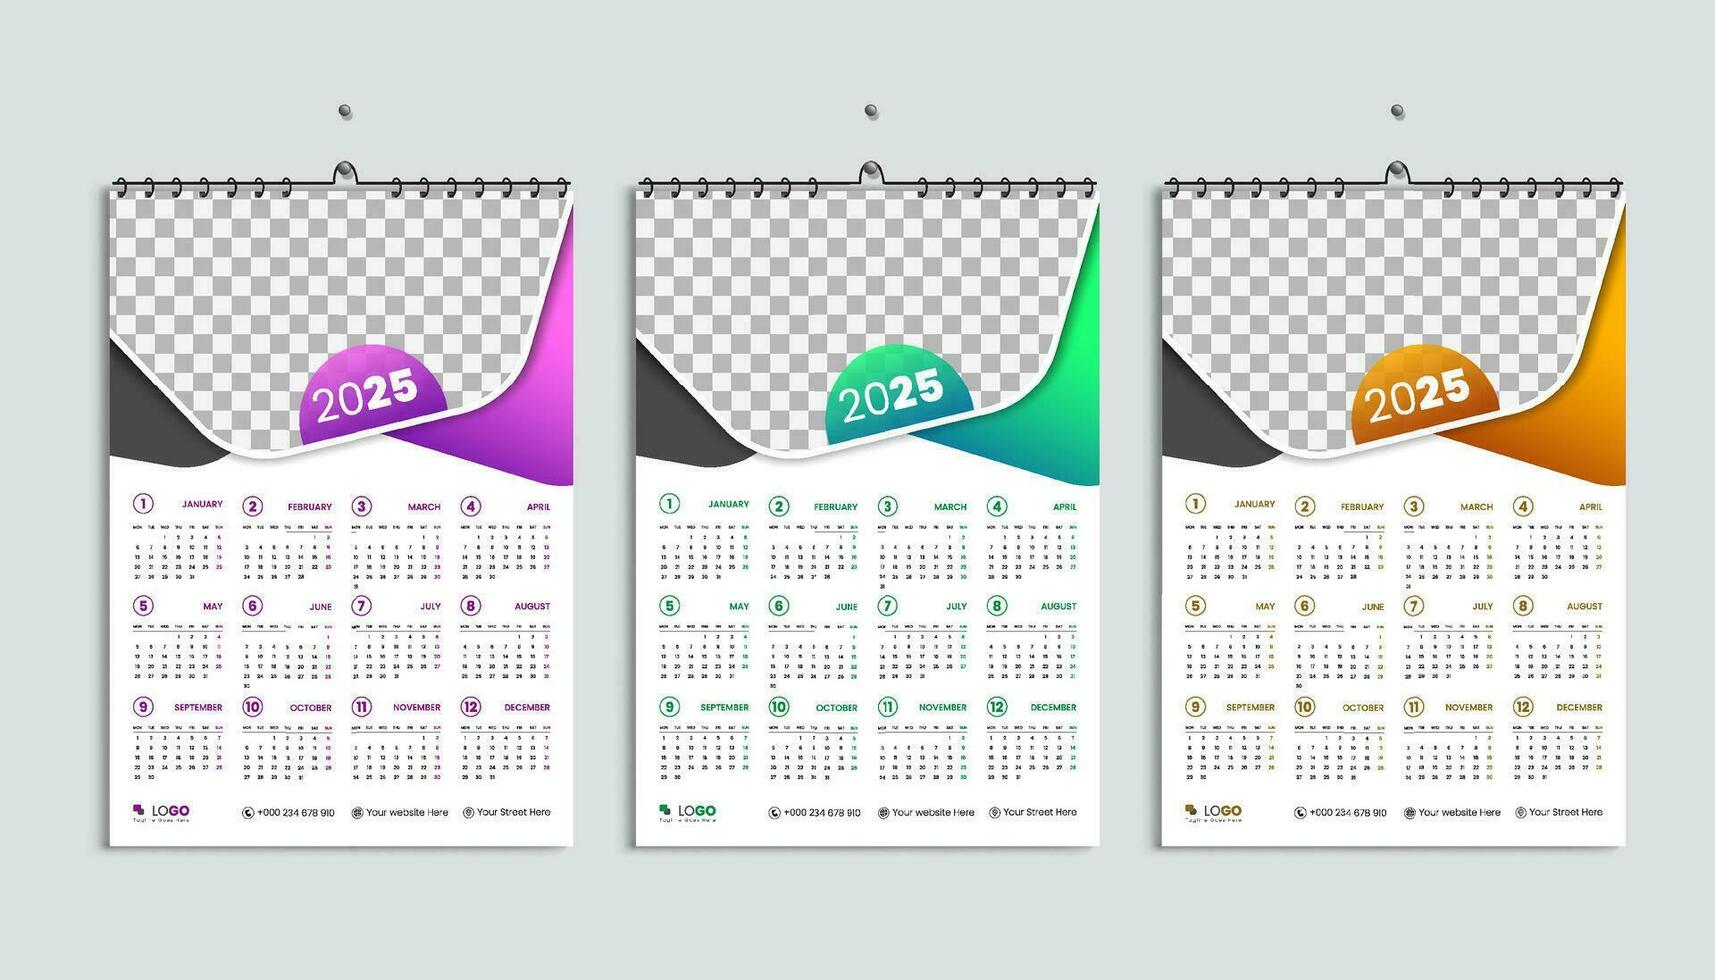 2025 Jahr Kalender, Woche beginnt von Montag, einfach und minimal Kalender Vektor Layout Satz, Englisch jährlich Schreibwaren Veranstalter Mauer Kalender Vorlage 12 Monate, lila, orange, Grün Farben bündeln